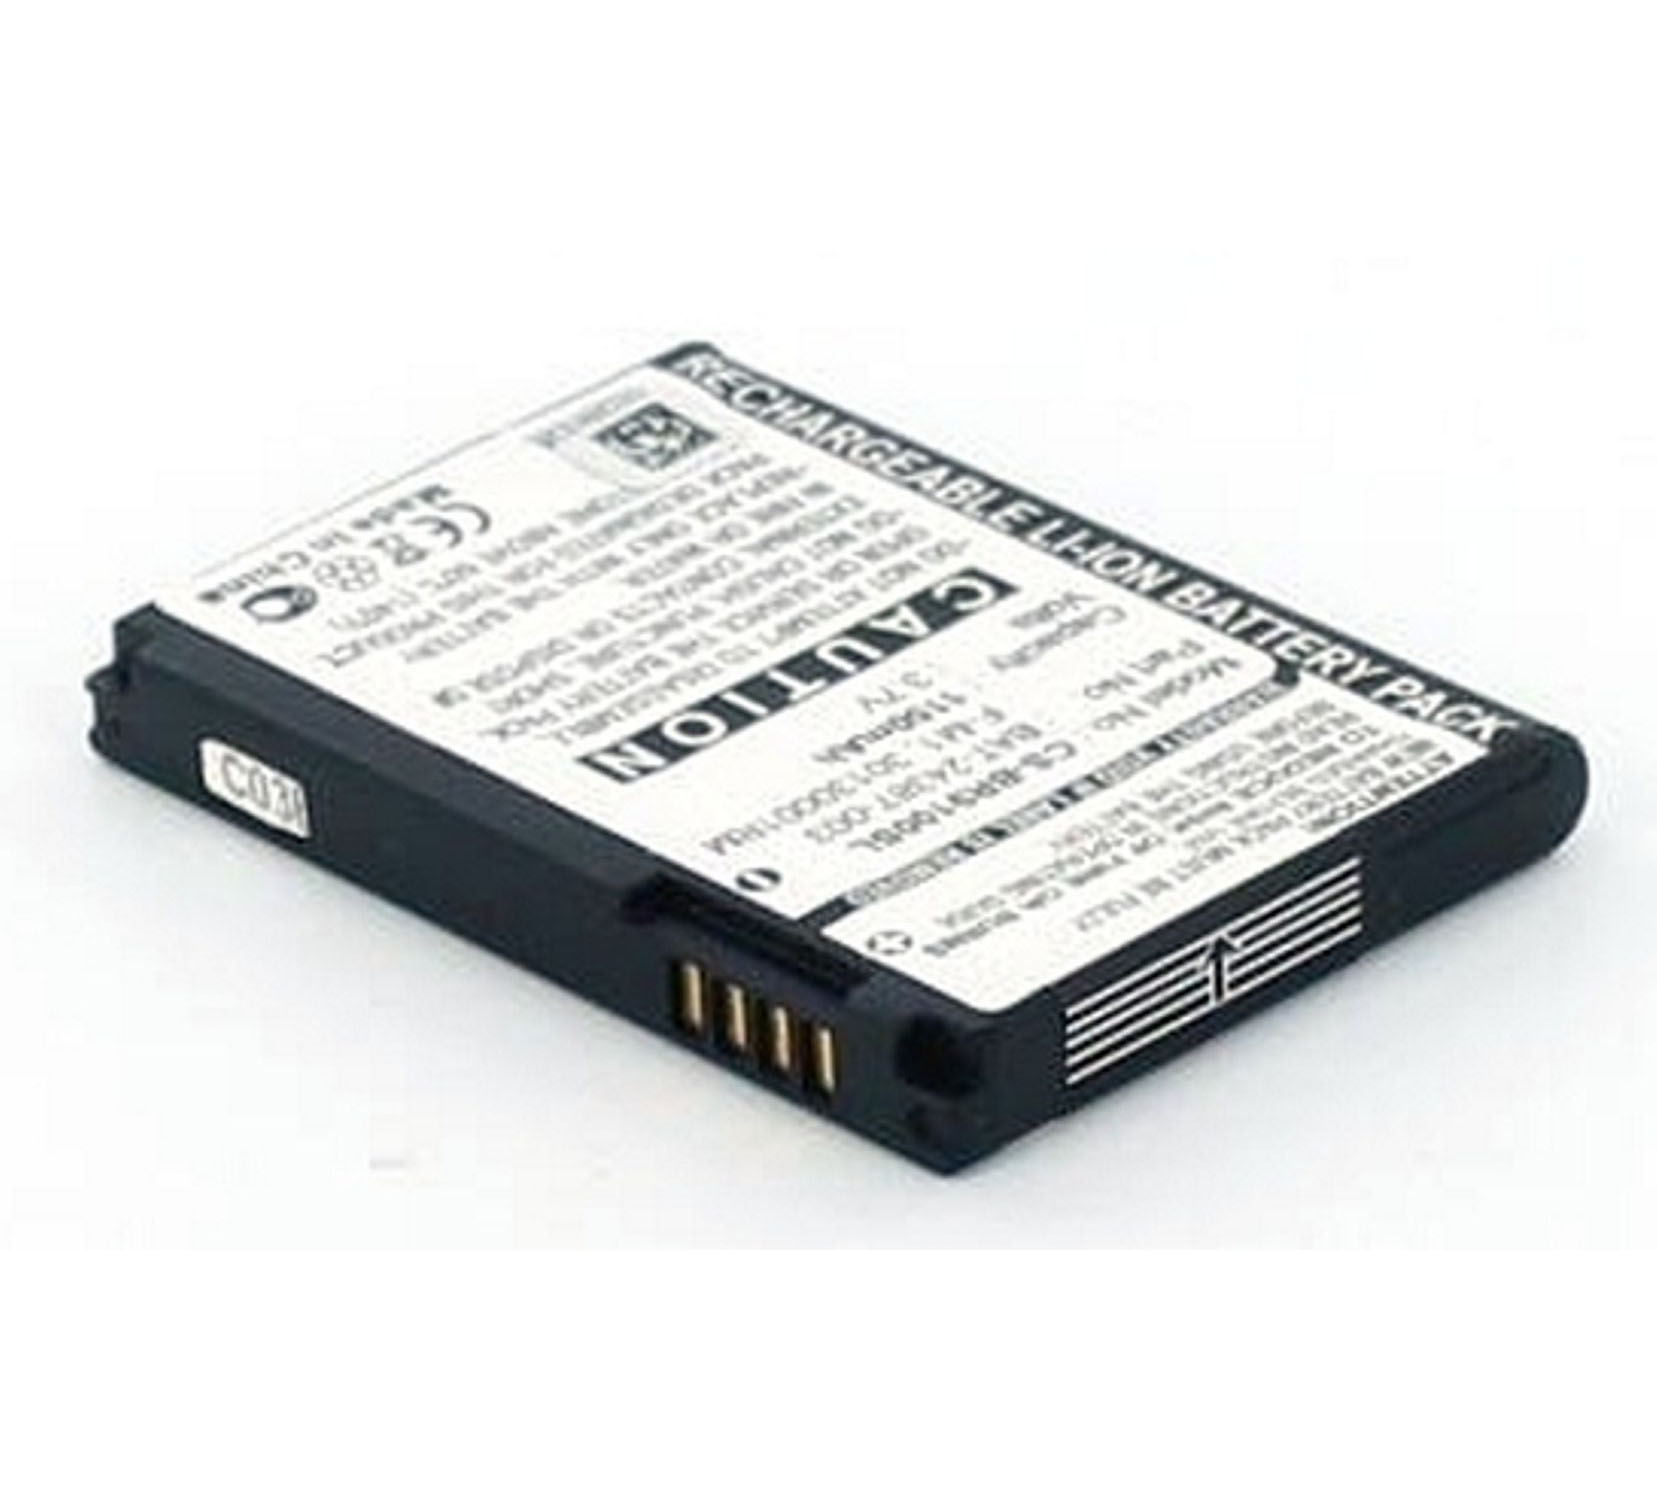 3.7 Volt, mit AGI Handy-/Smartphoneakku, 2 Li-Ion kompatibel Akku mAh 1100 Li-Ion, F-M1|Stratus|Striker|Pearl Blackberry